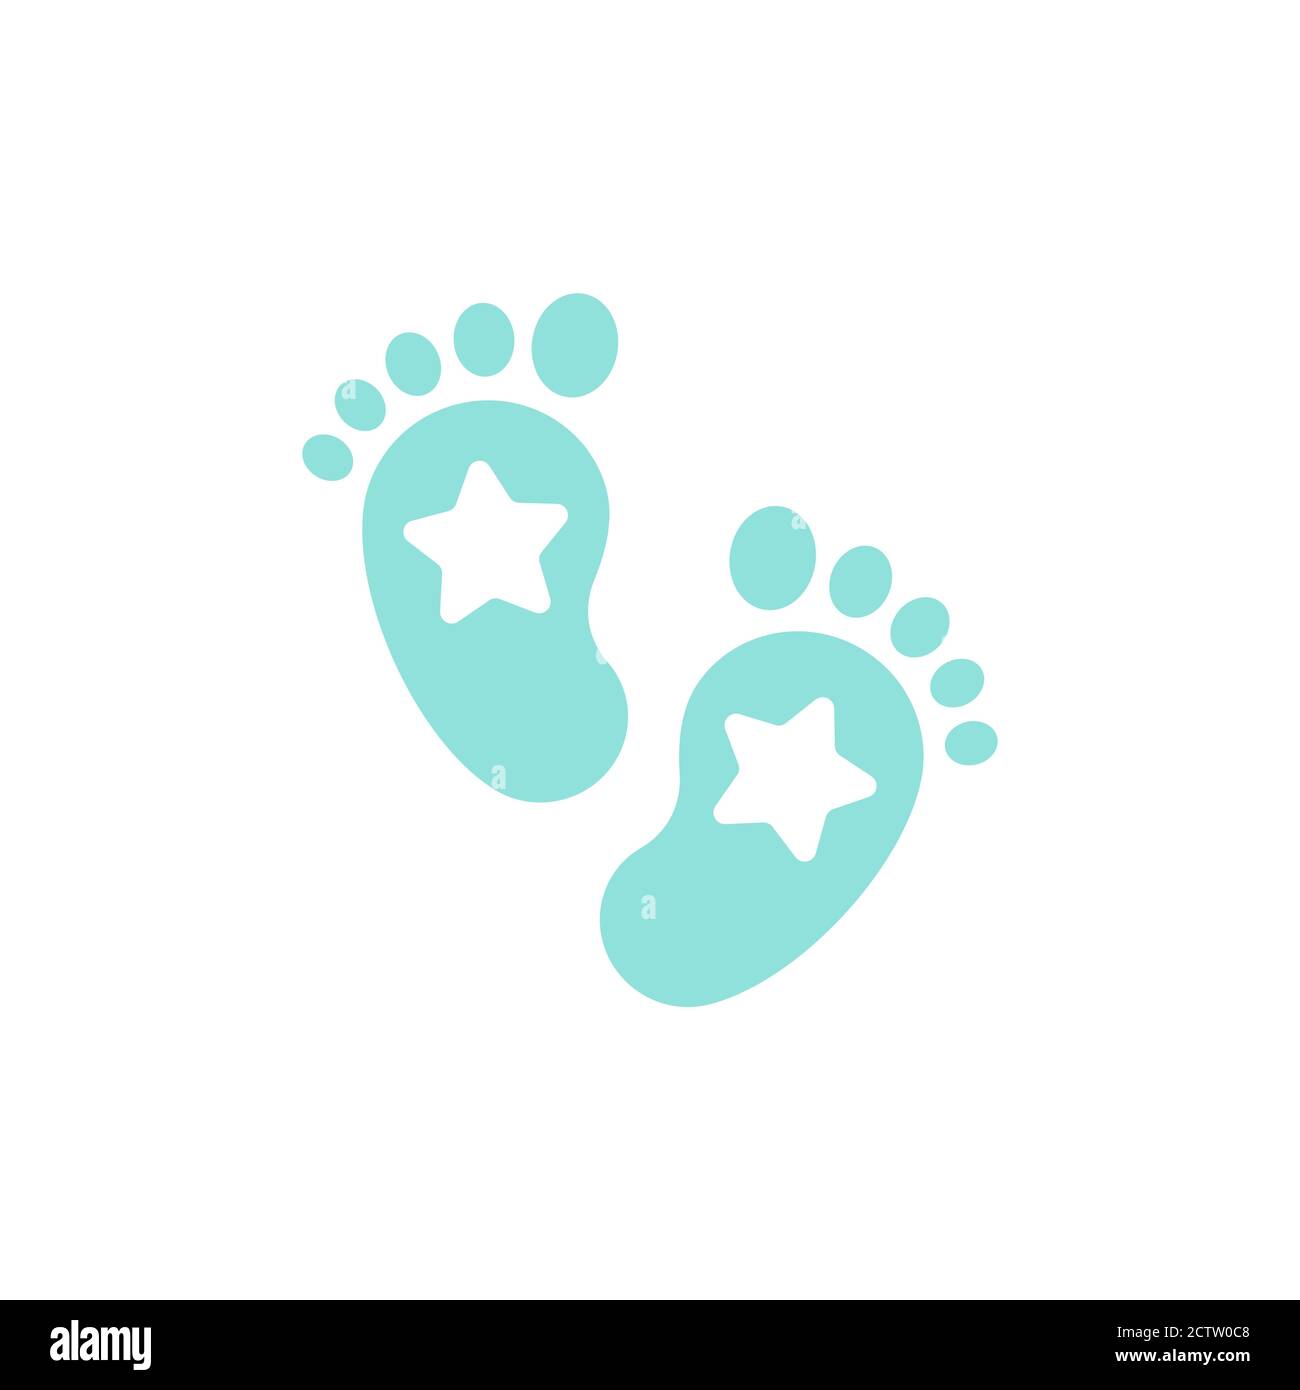 Par de huellas de bebé recién nacido: fotografía de stock © deepspacedave  #5550251